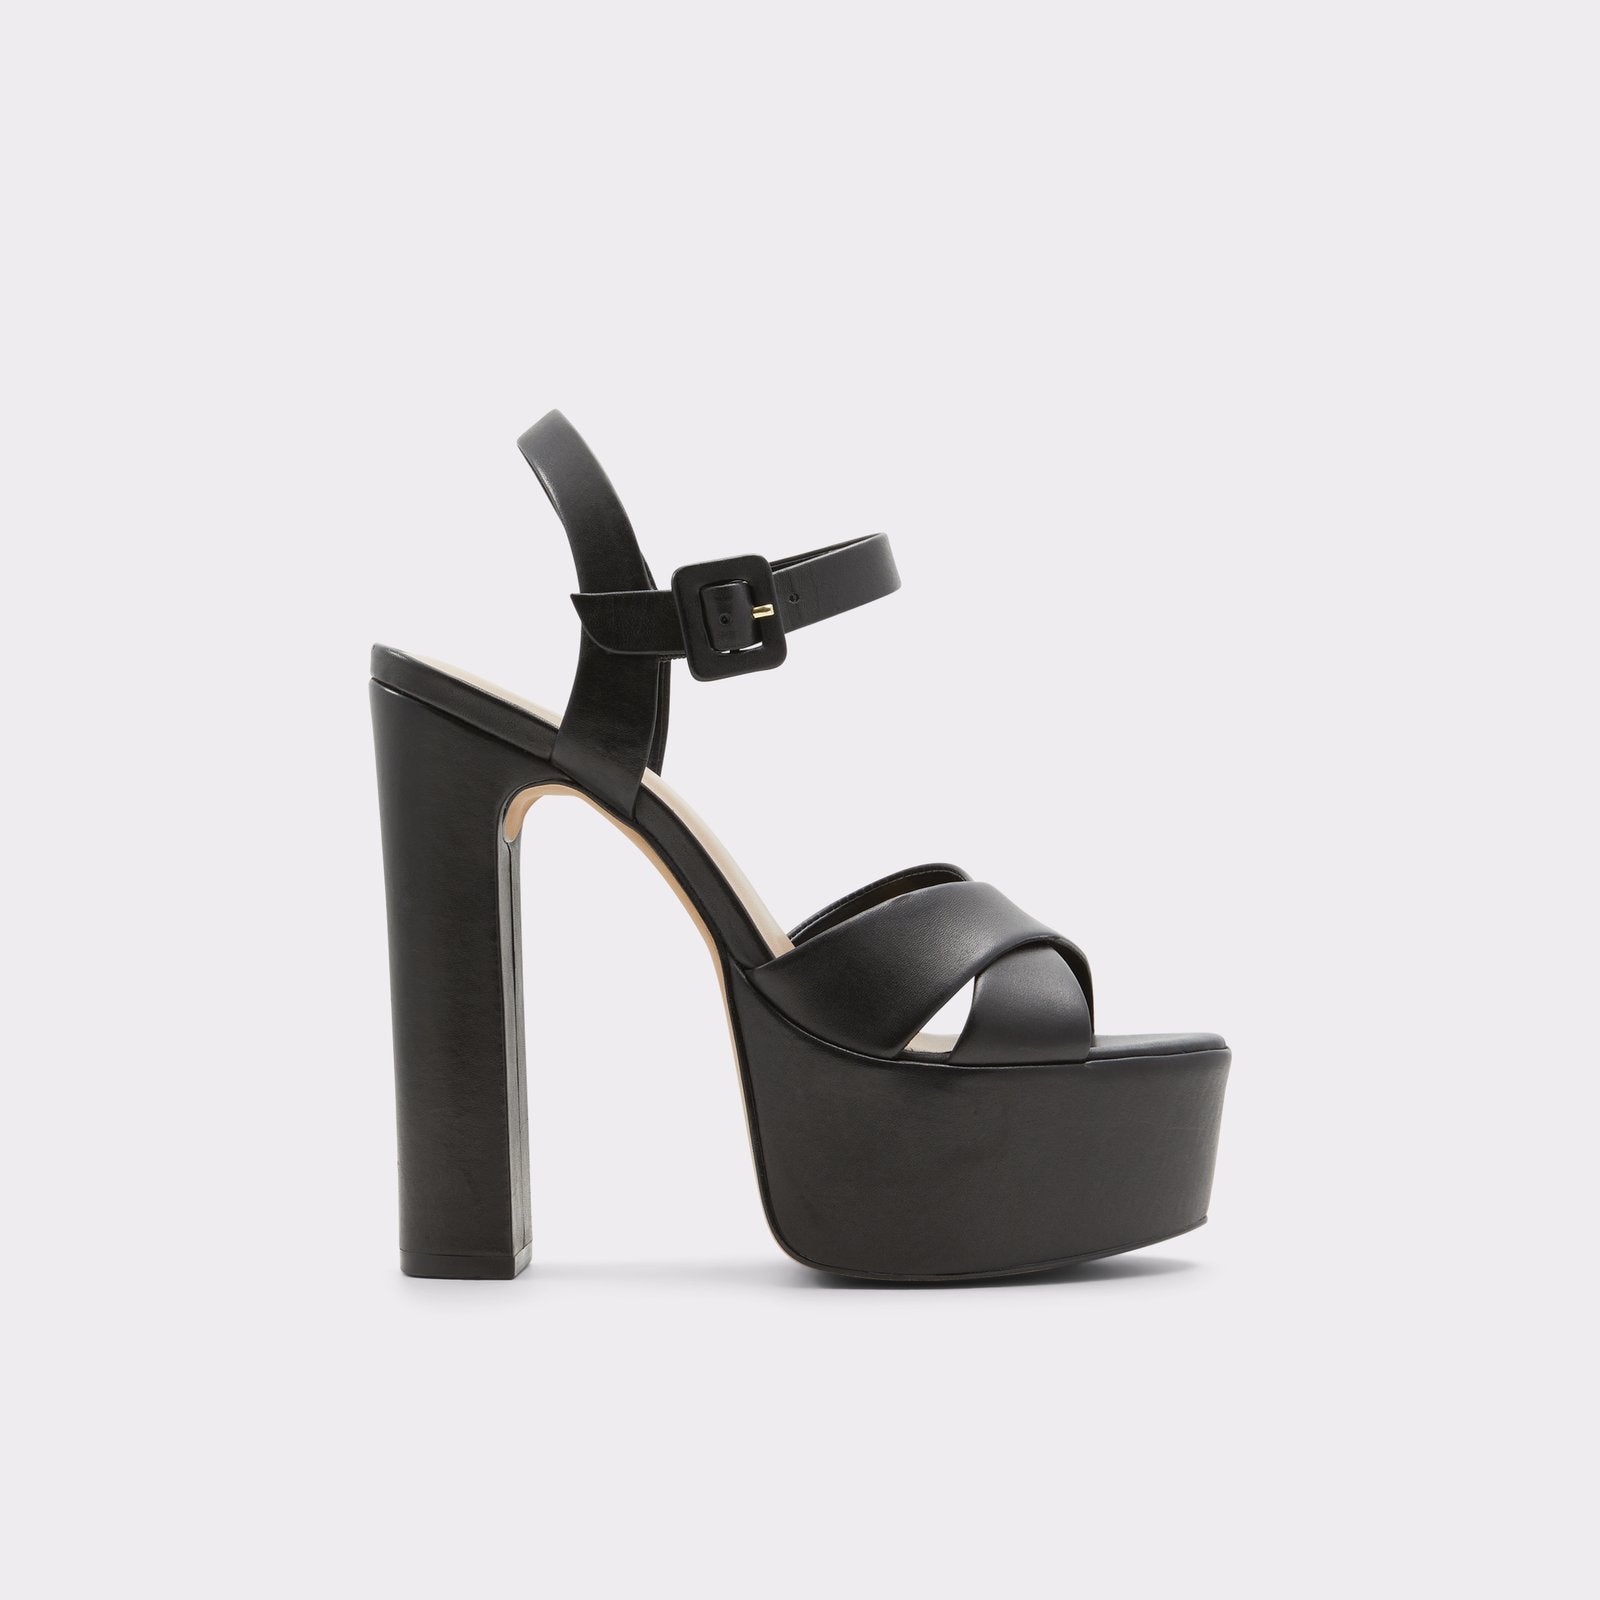 Aldo Women's Heeled Sandals Camelia (Black) – ALDO Shoes UK